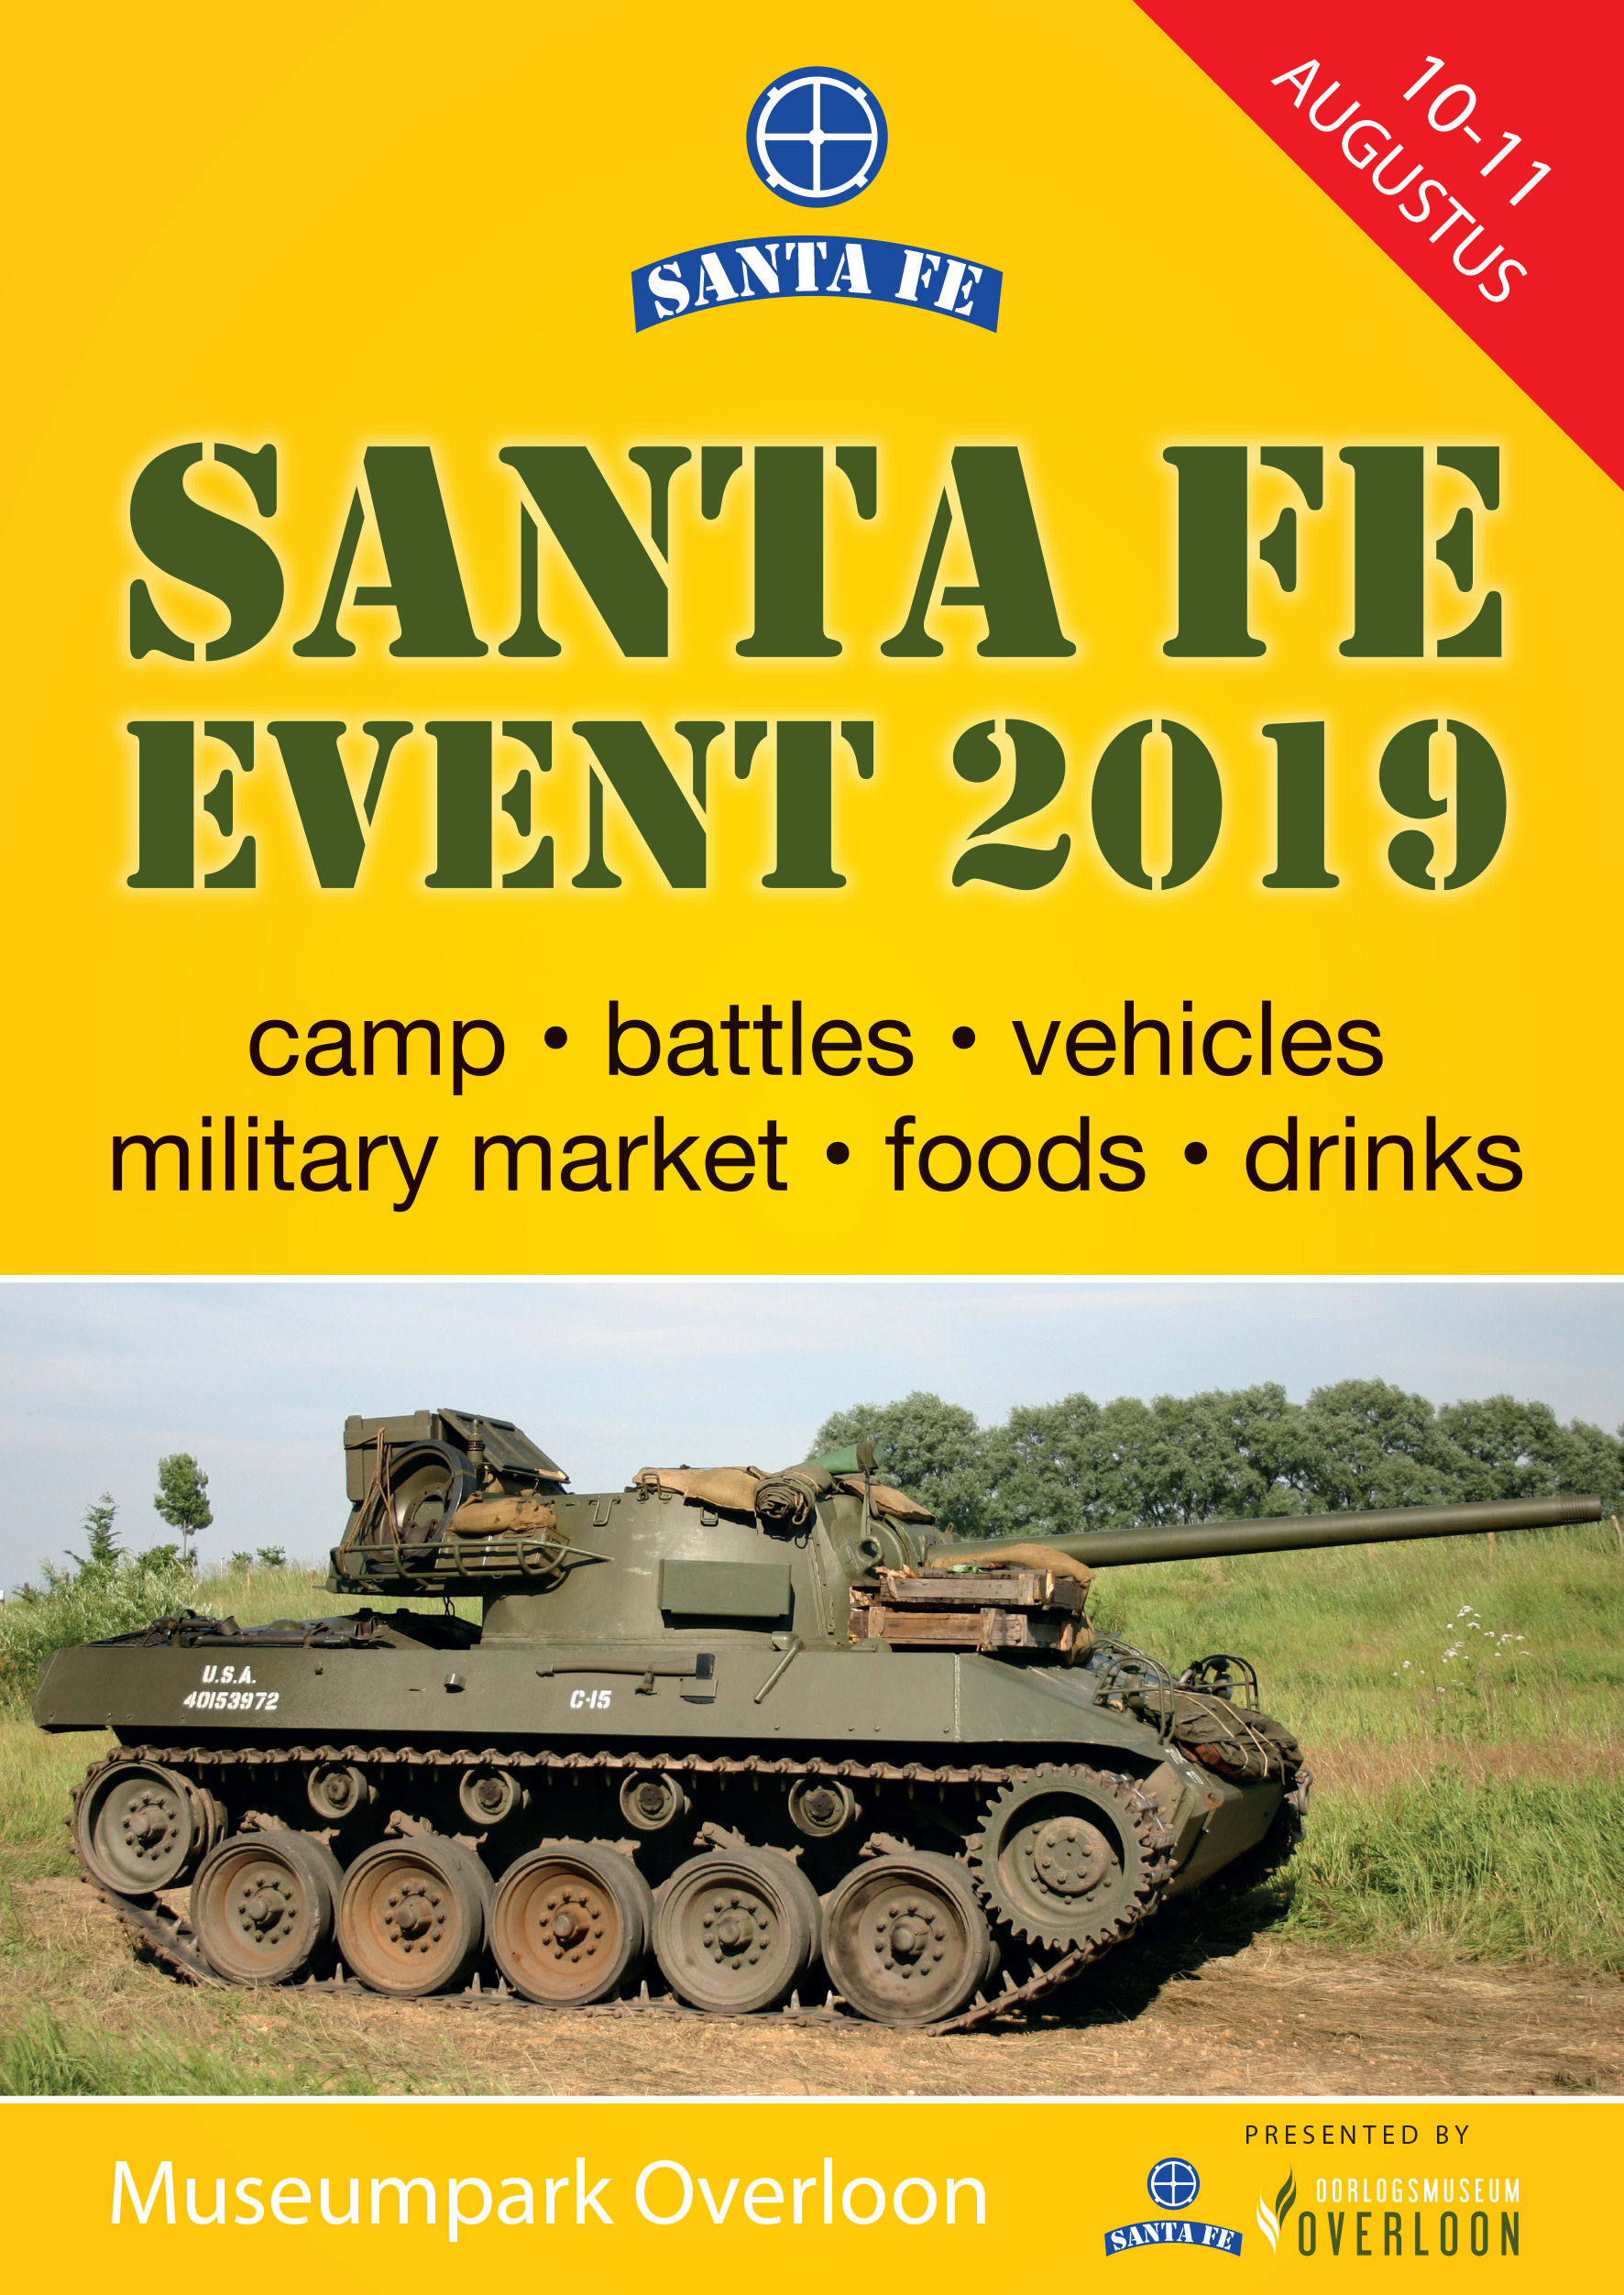 Santa Fe Event 2019